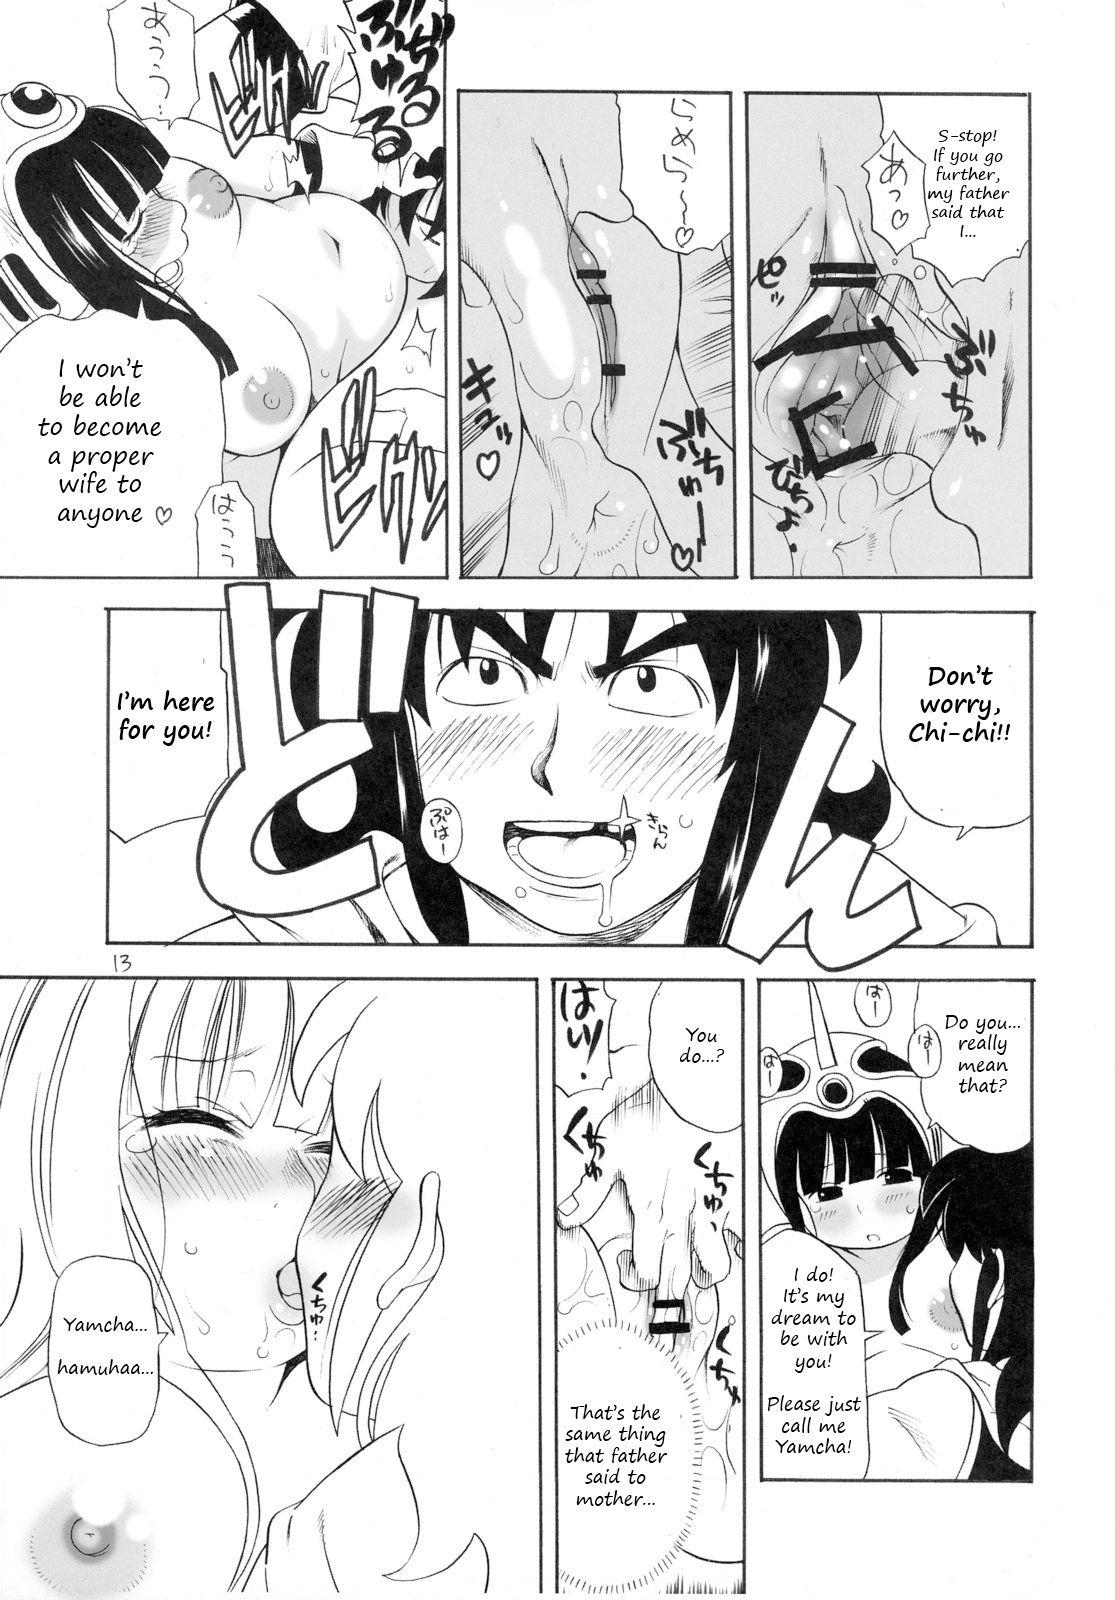 Masterbate muchi-chichi | Ignorant Chichi - Dragon ball Adorable - Page 12